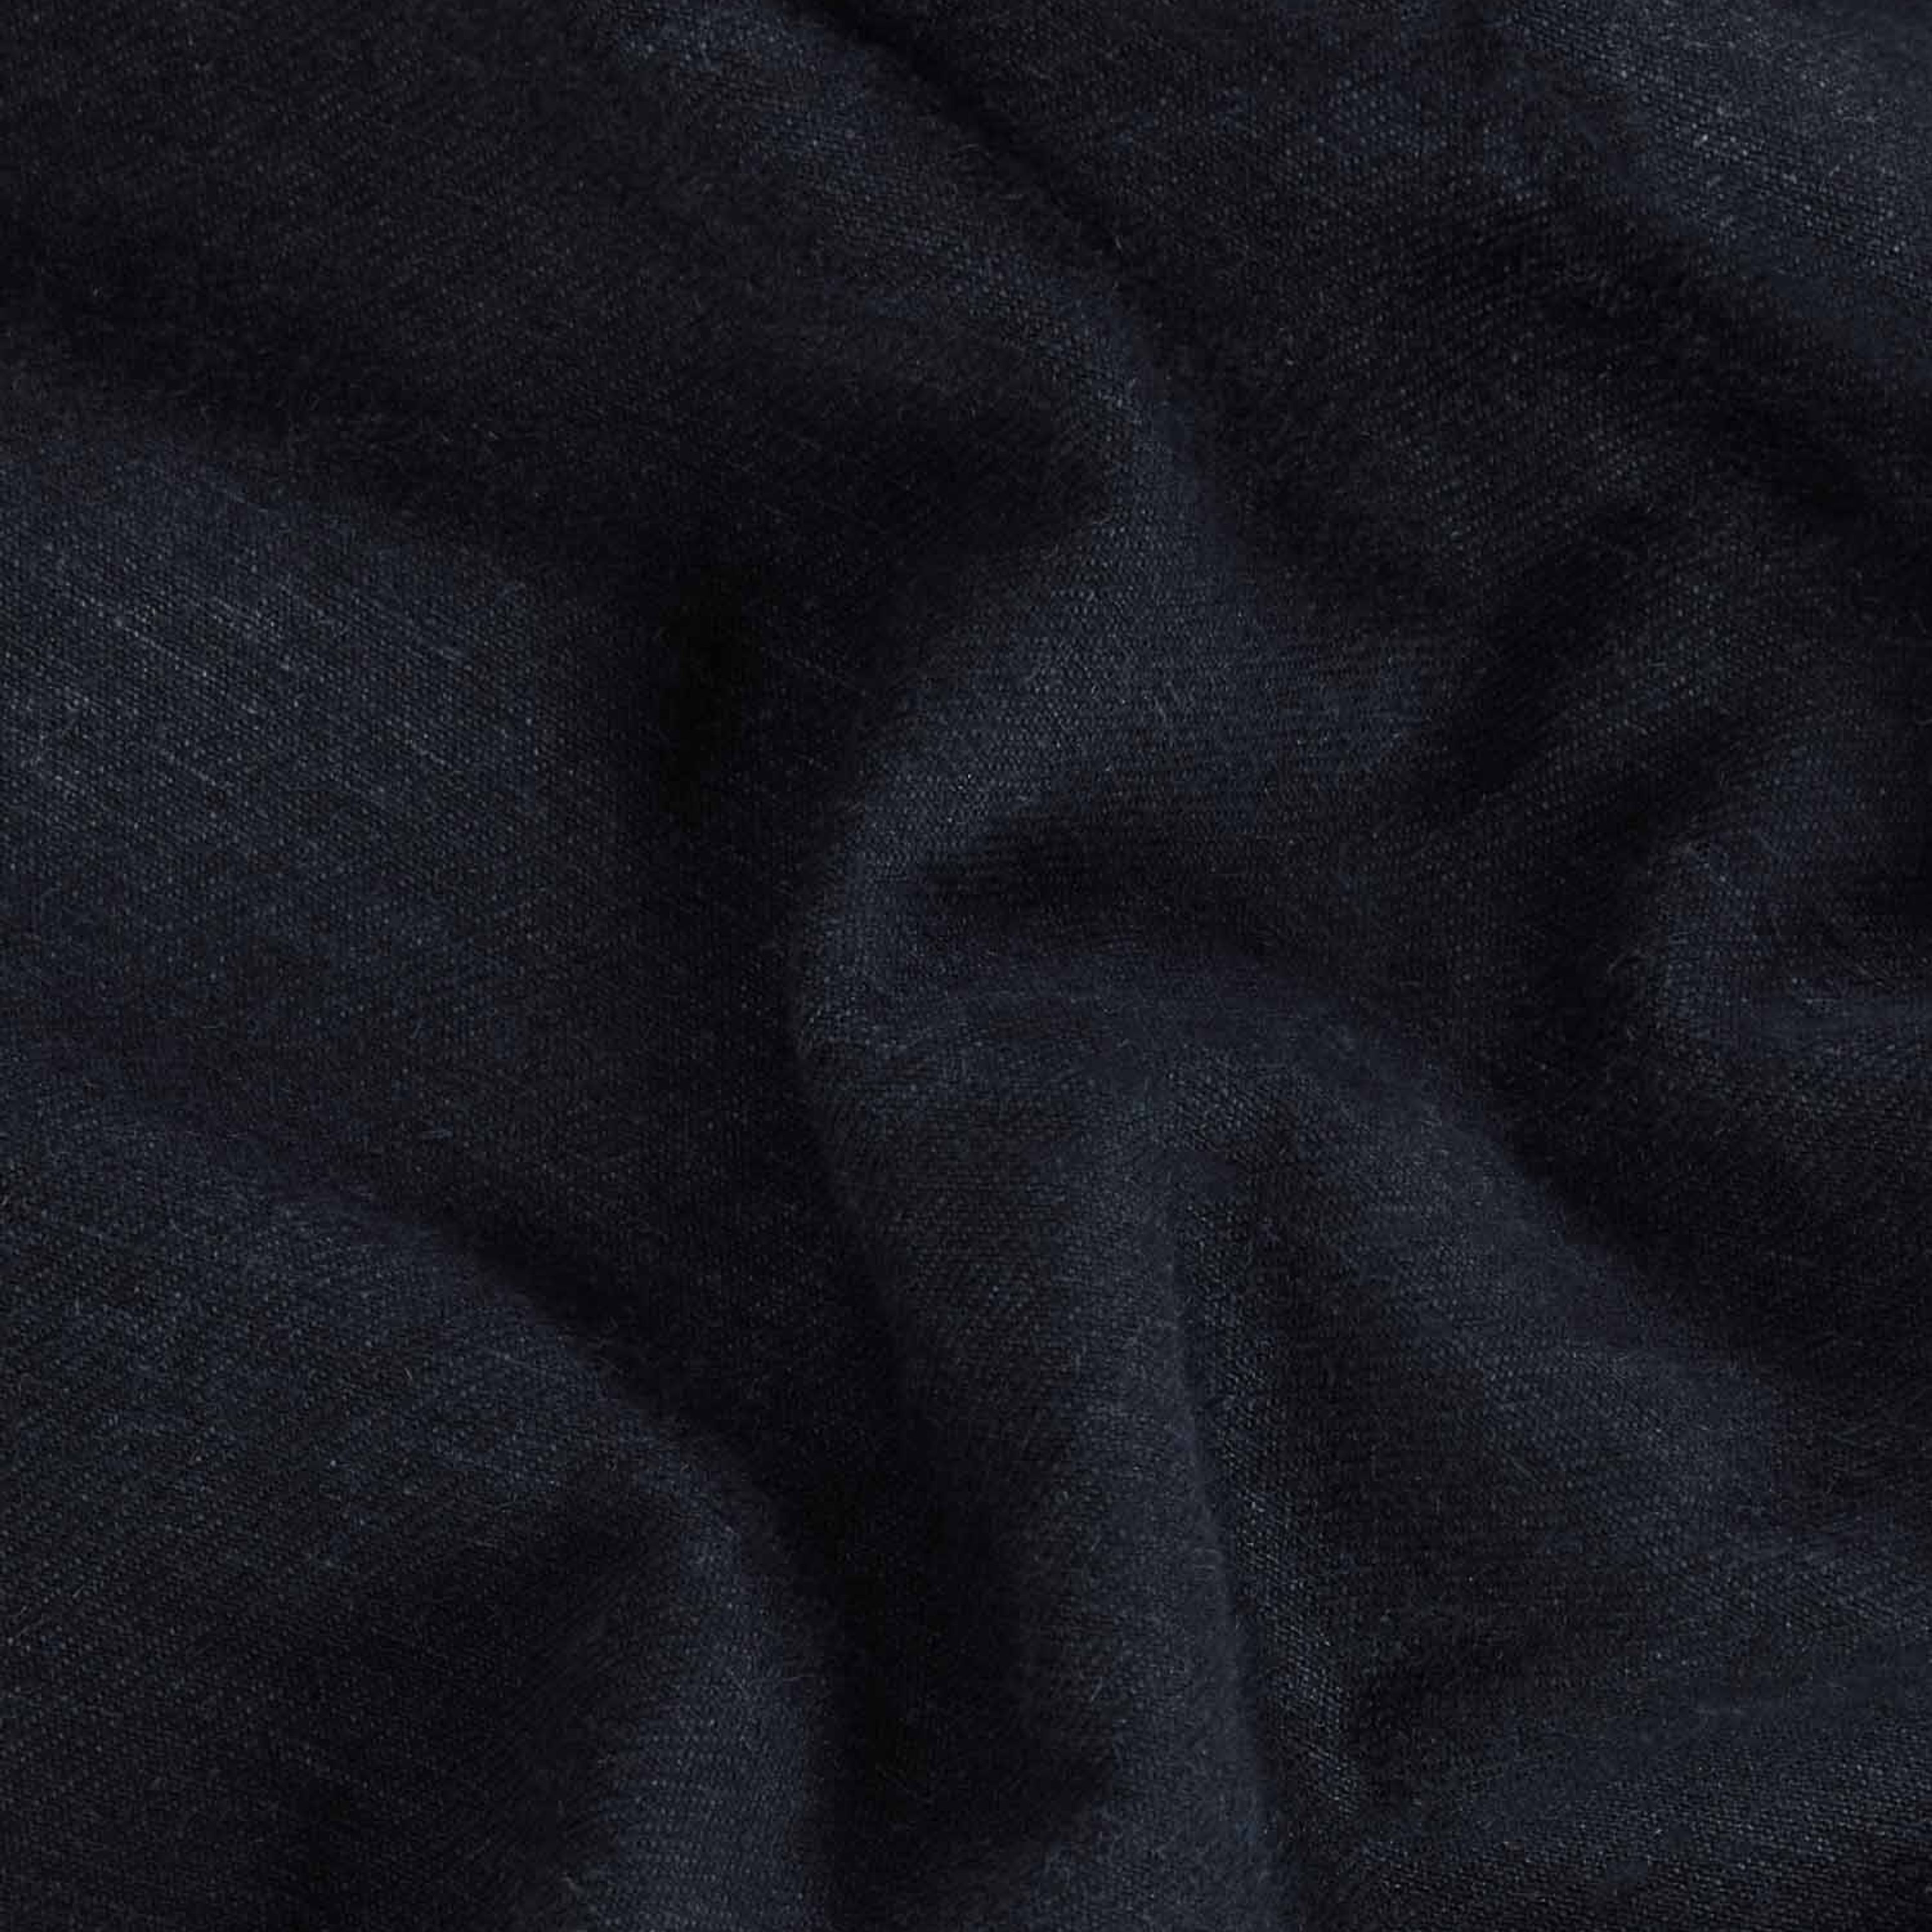 Nettle Denim Jacket—black